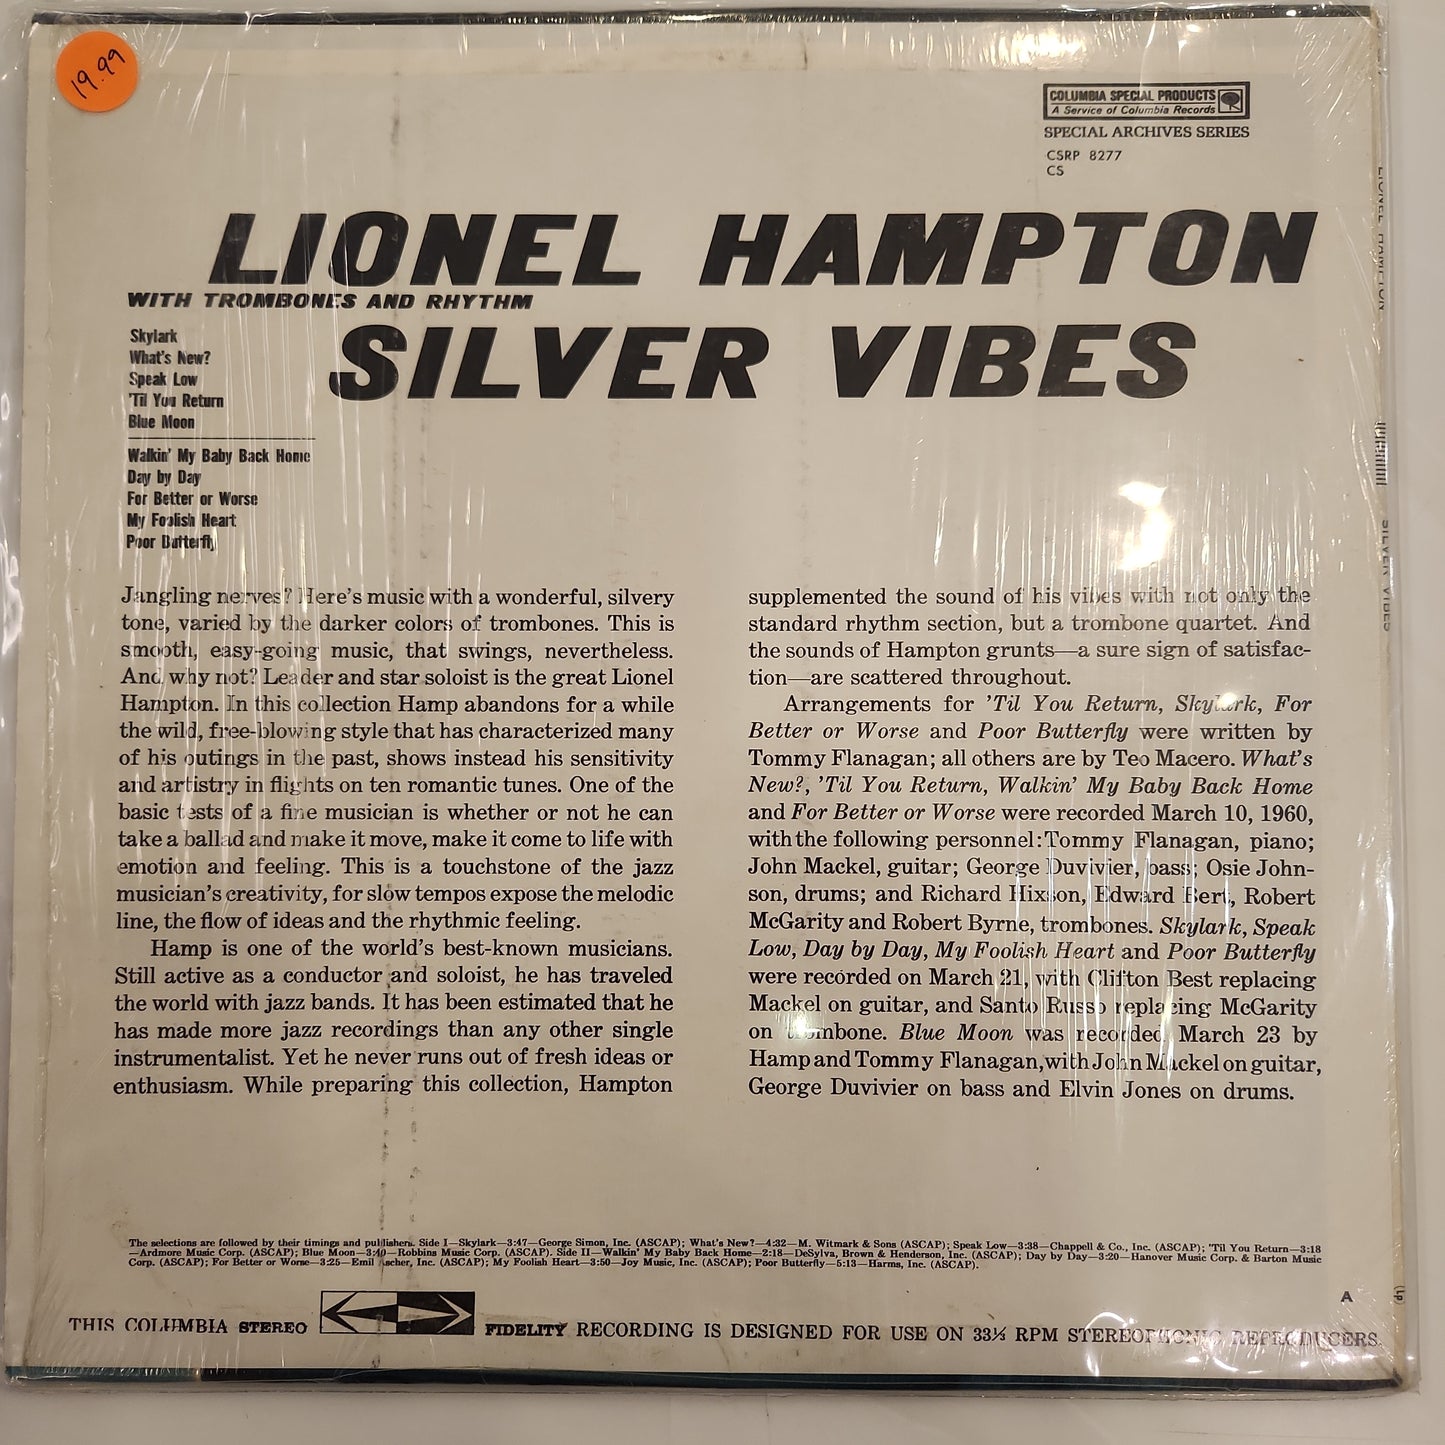 Lionel Hampton - Silver Vibes